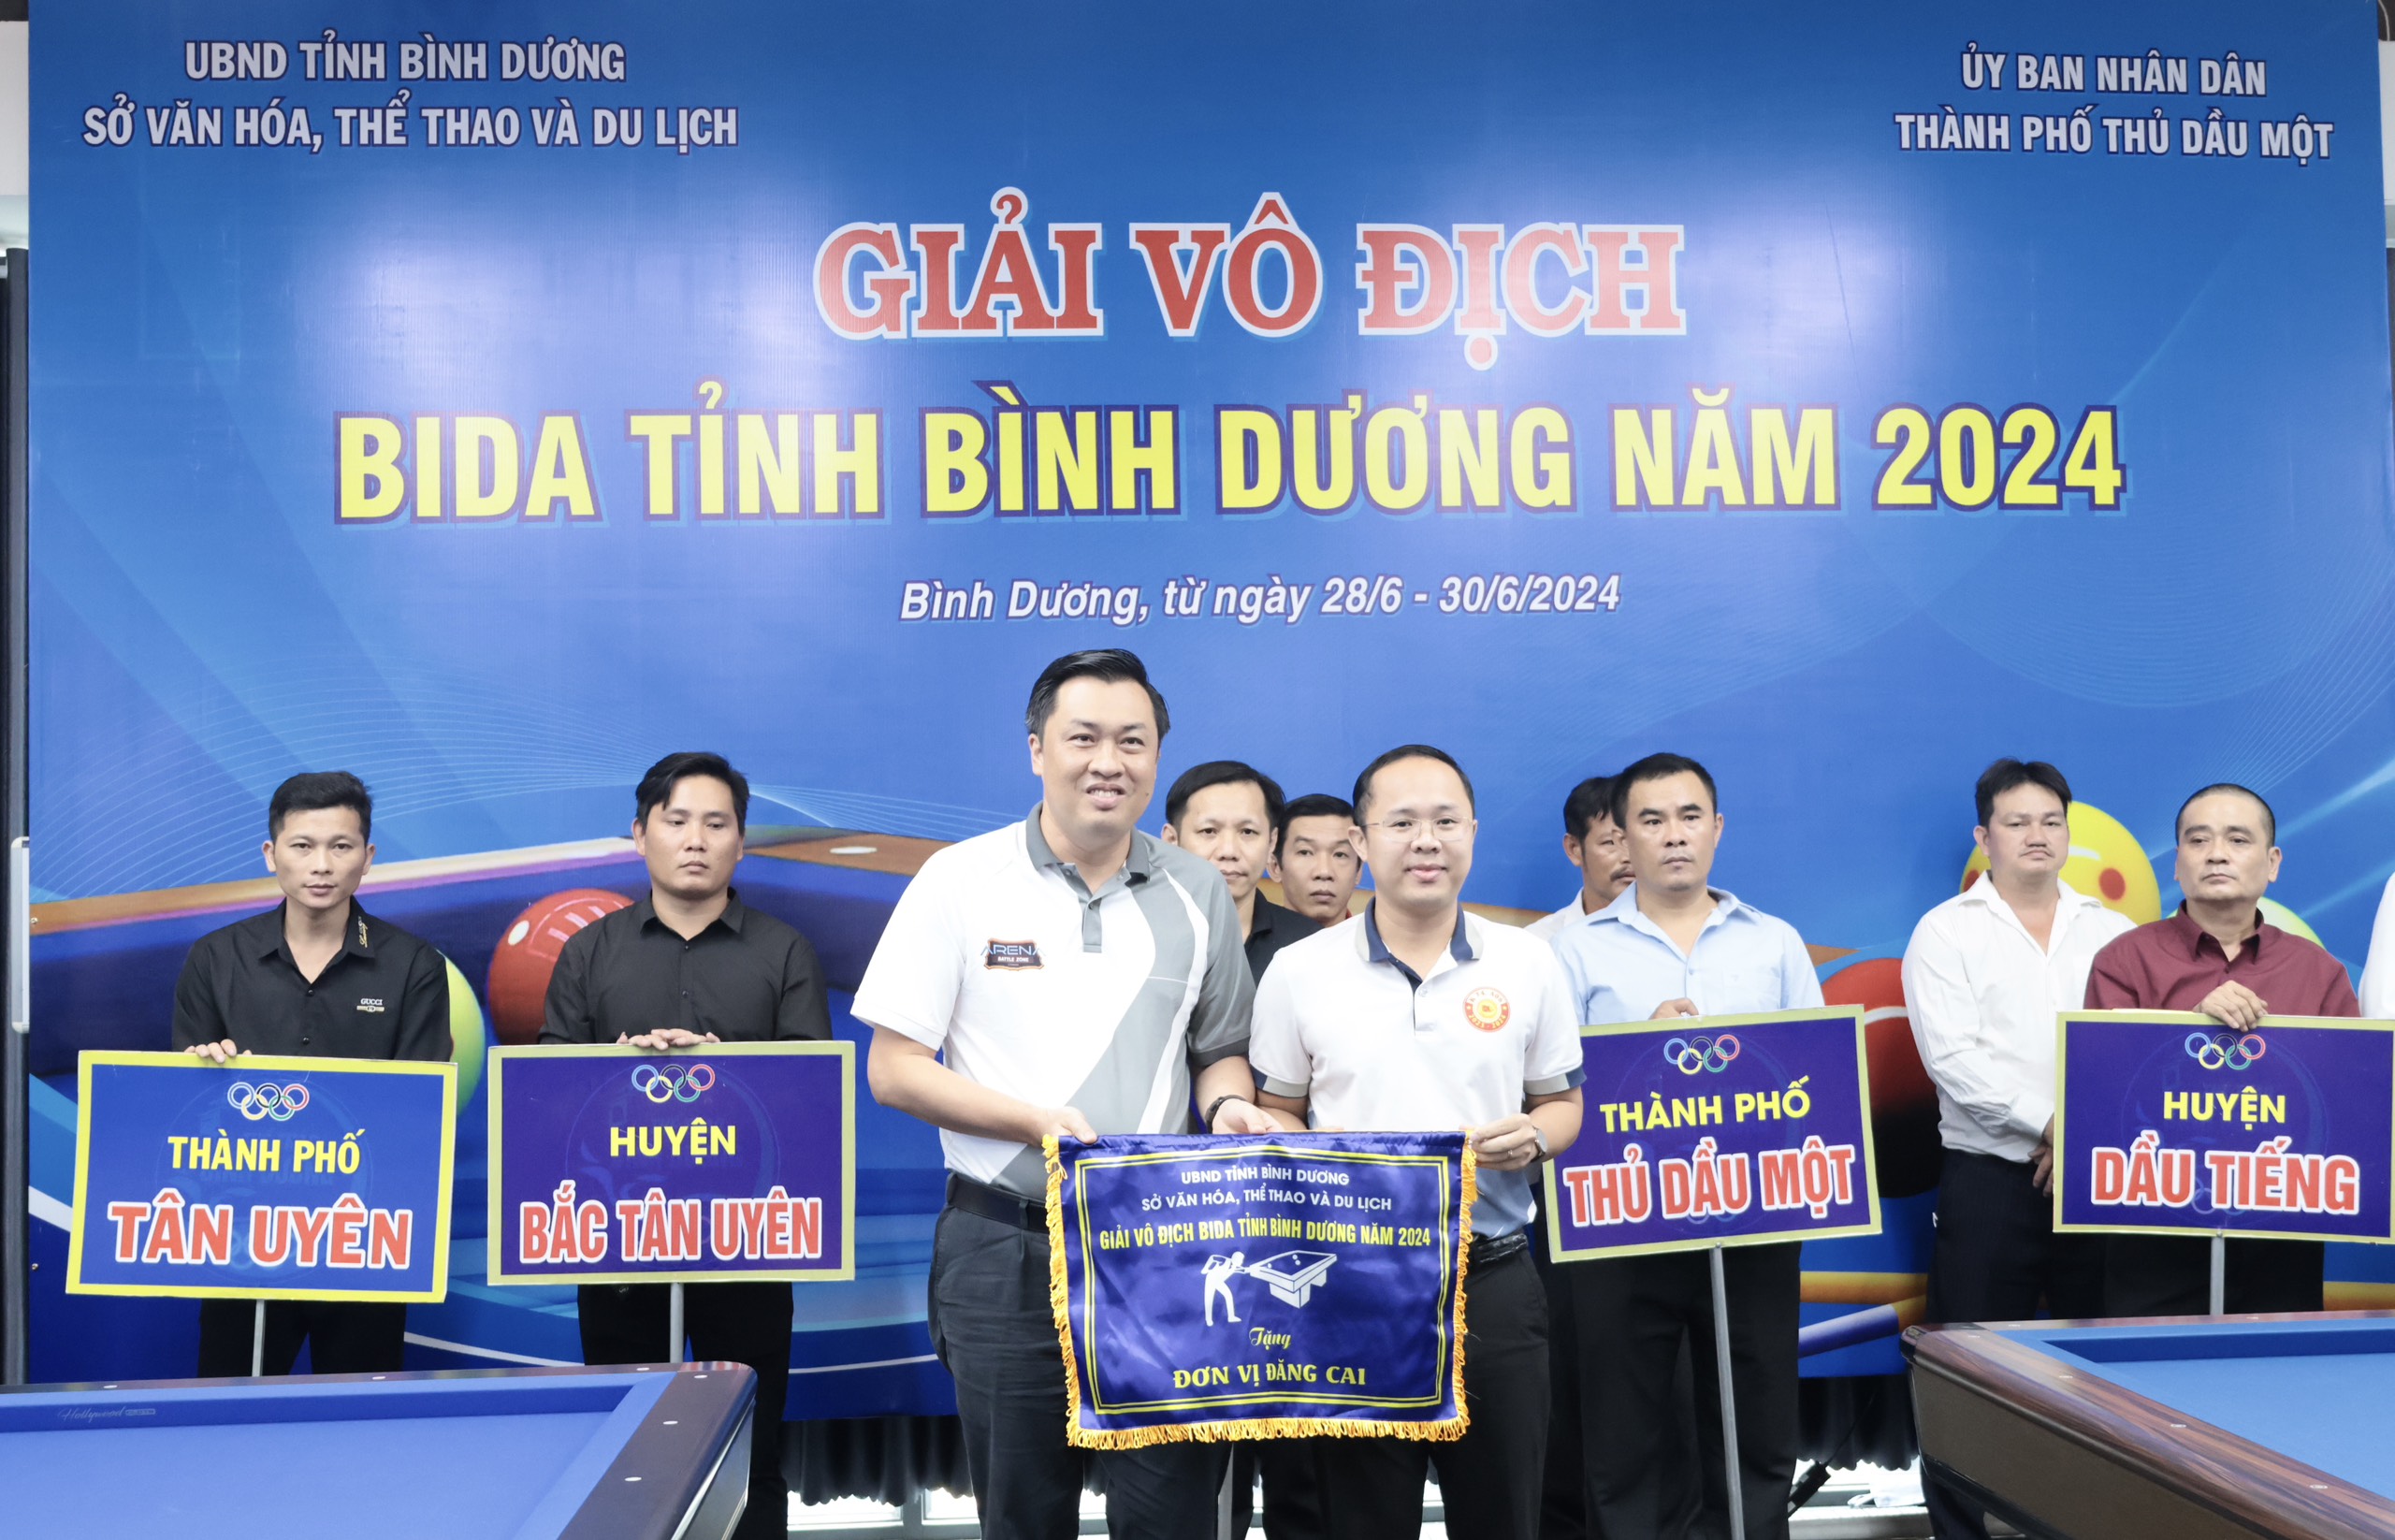 Ông Cao Văn Chóng, Phó Giám đốc Sở Văn hóa, Thể thao và Du lịch tặng cờ lưu niệm cho thành phố Thủ Dầu Một, đơn vị đăng cai giải